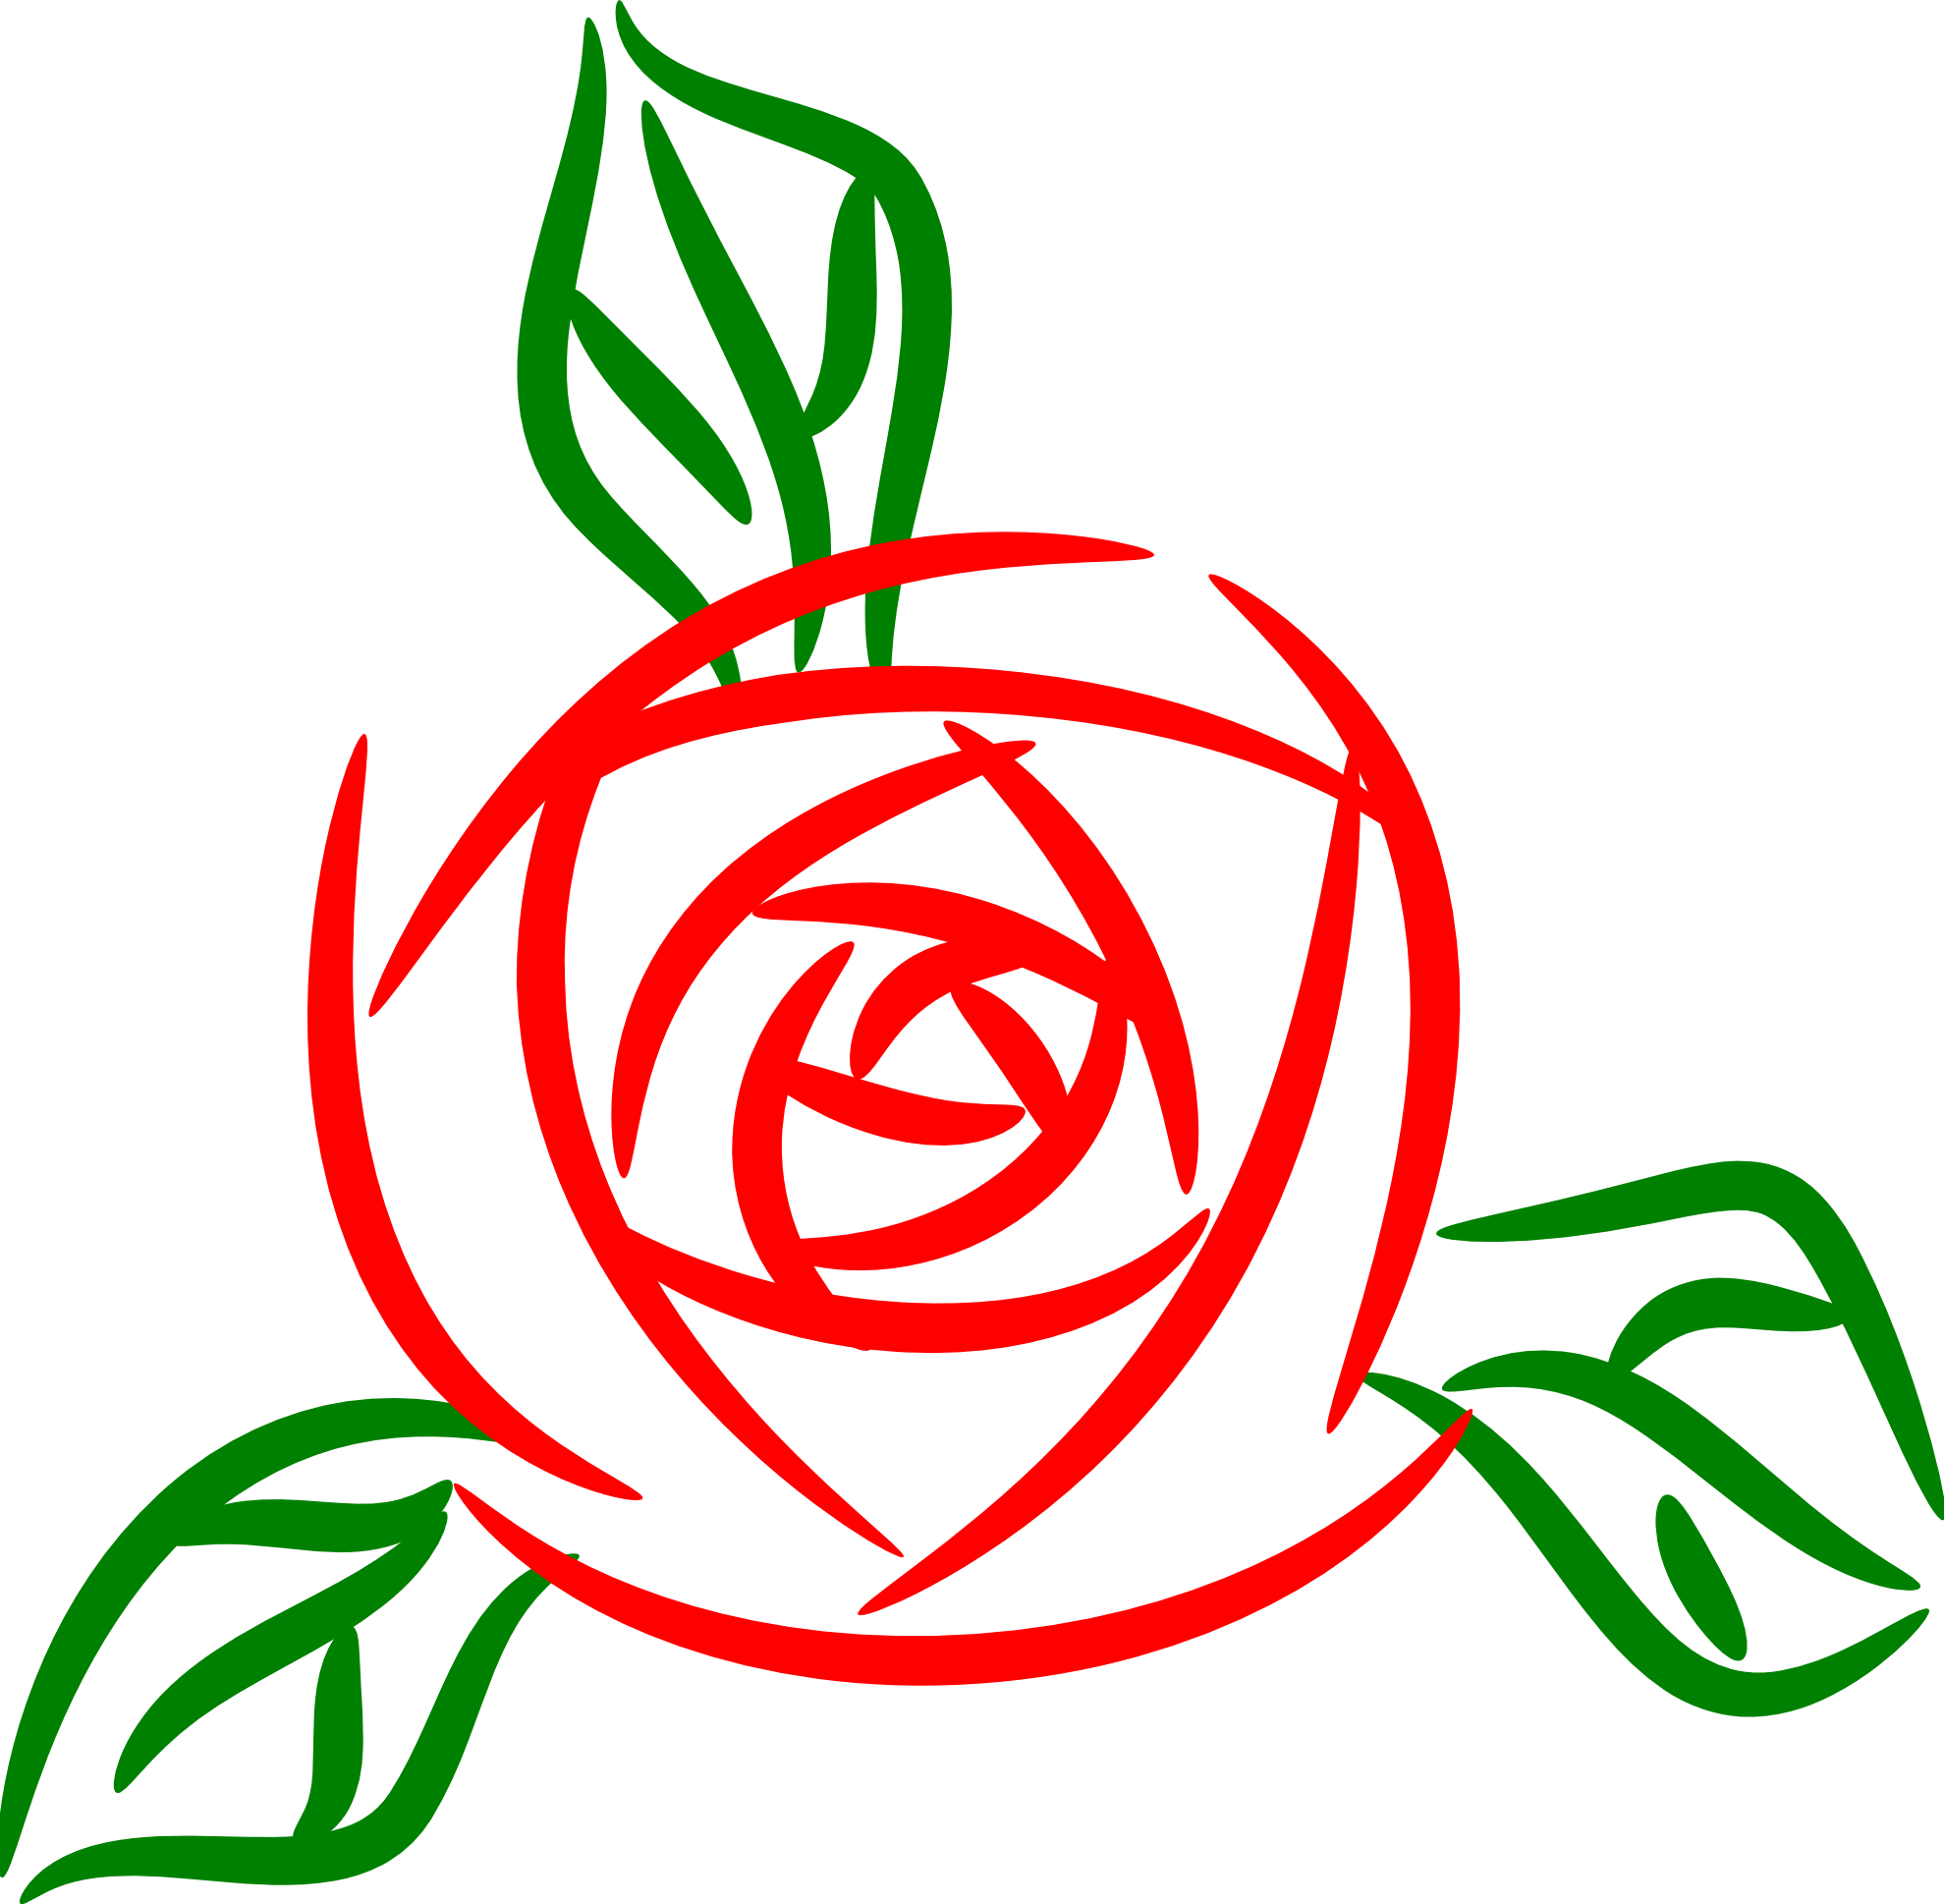 На белом листе бумаги нарисован красный цветок. Стилизованное изображение розы. Схематичное изображение розы.